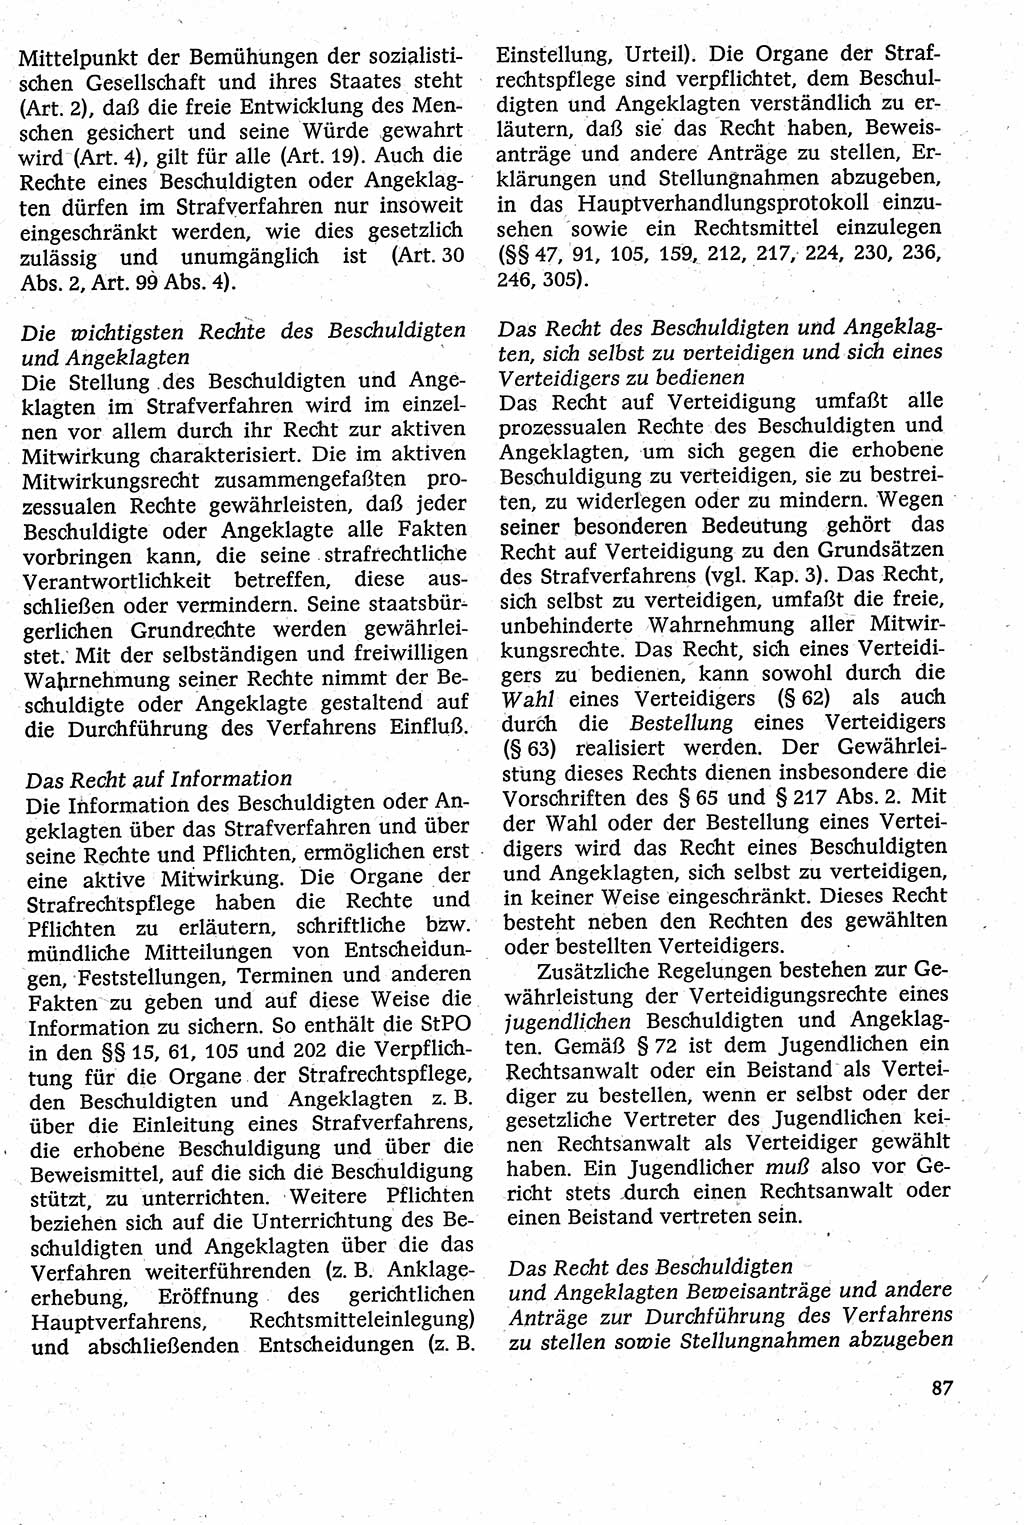 Strafverfahrensrecht [Deutsche Demokratische Republik (DDR)], Lehrbuch 1982, Seite 87 (Strafverf.-R. DDR Lb. 1982, S. 87)